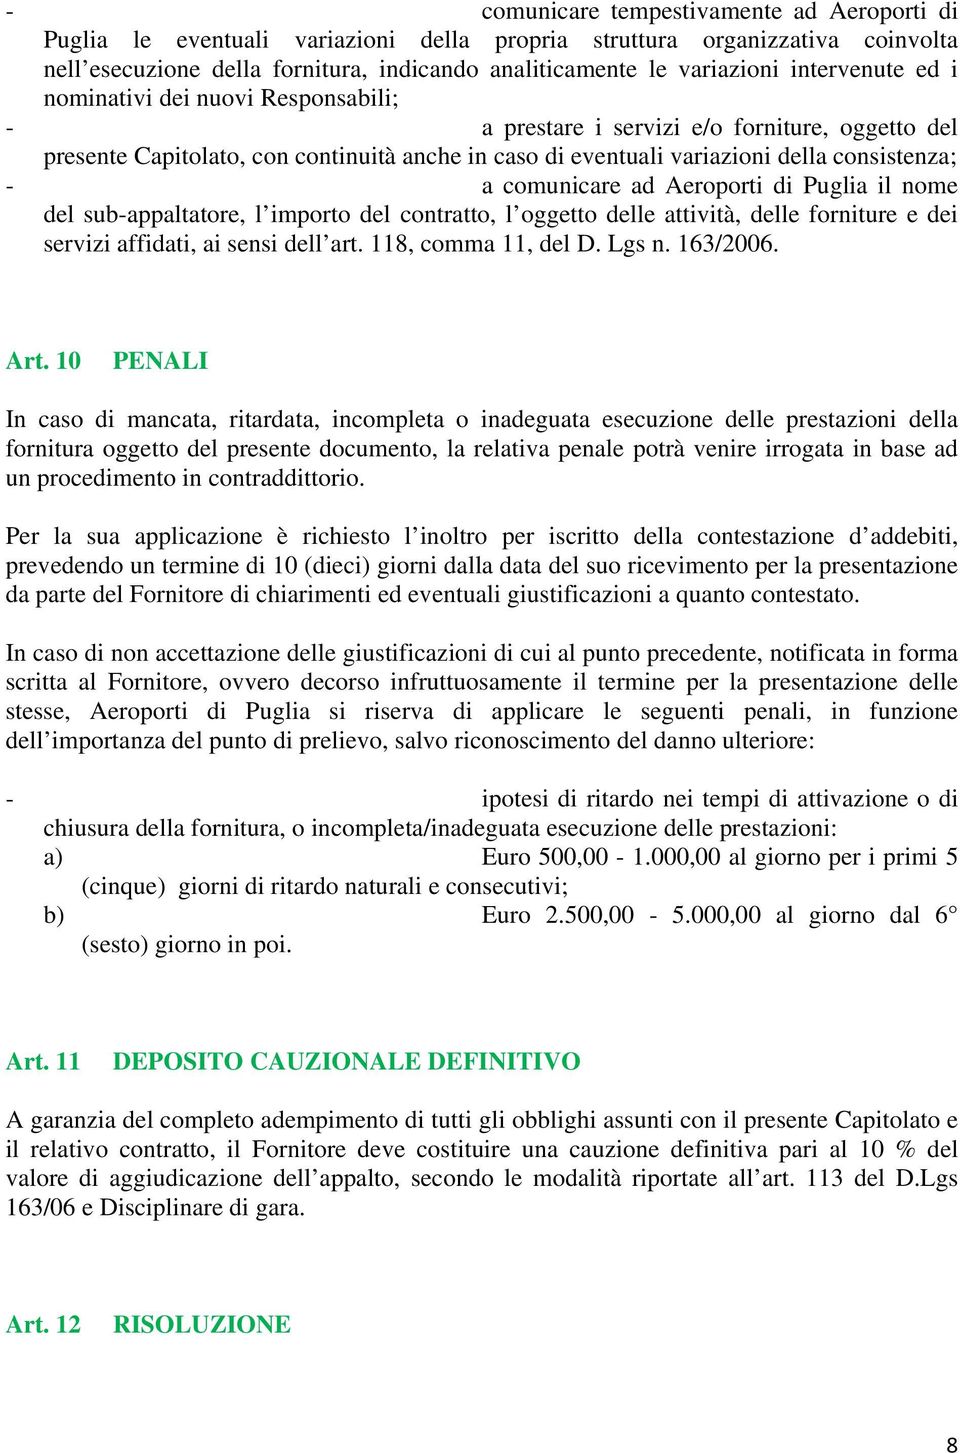 comunicare ad Aeroporti di Puglia il nome del sub-appaltatore, l importo del contratto, l oggetto delle attività, delle forniture e dei servizi affidati, ai sensi dell art. 118, comma 11, del D.